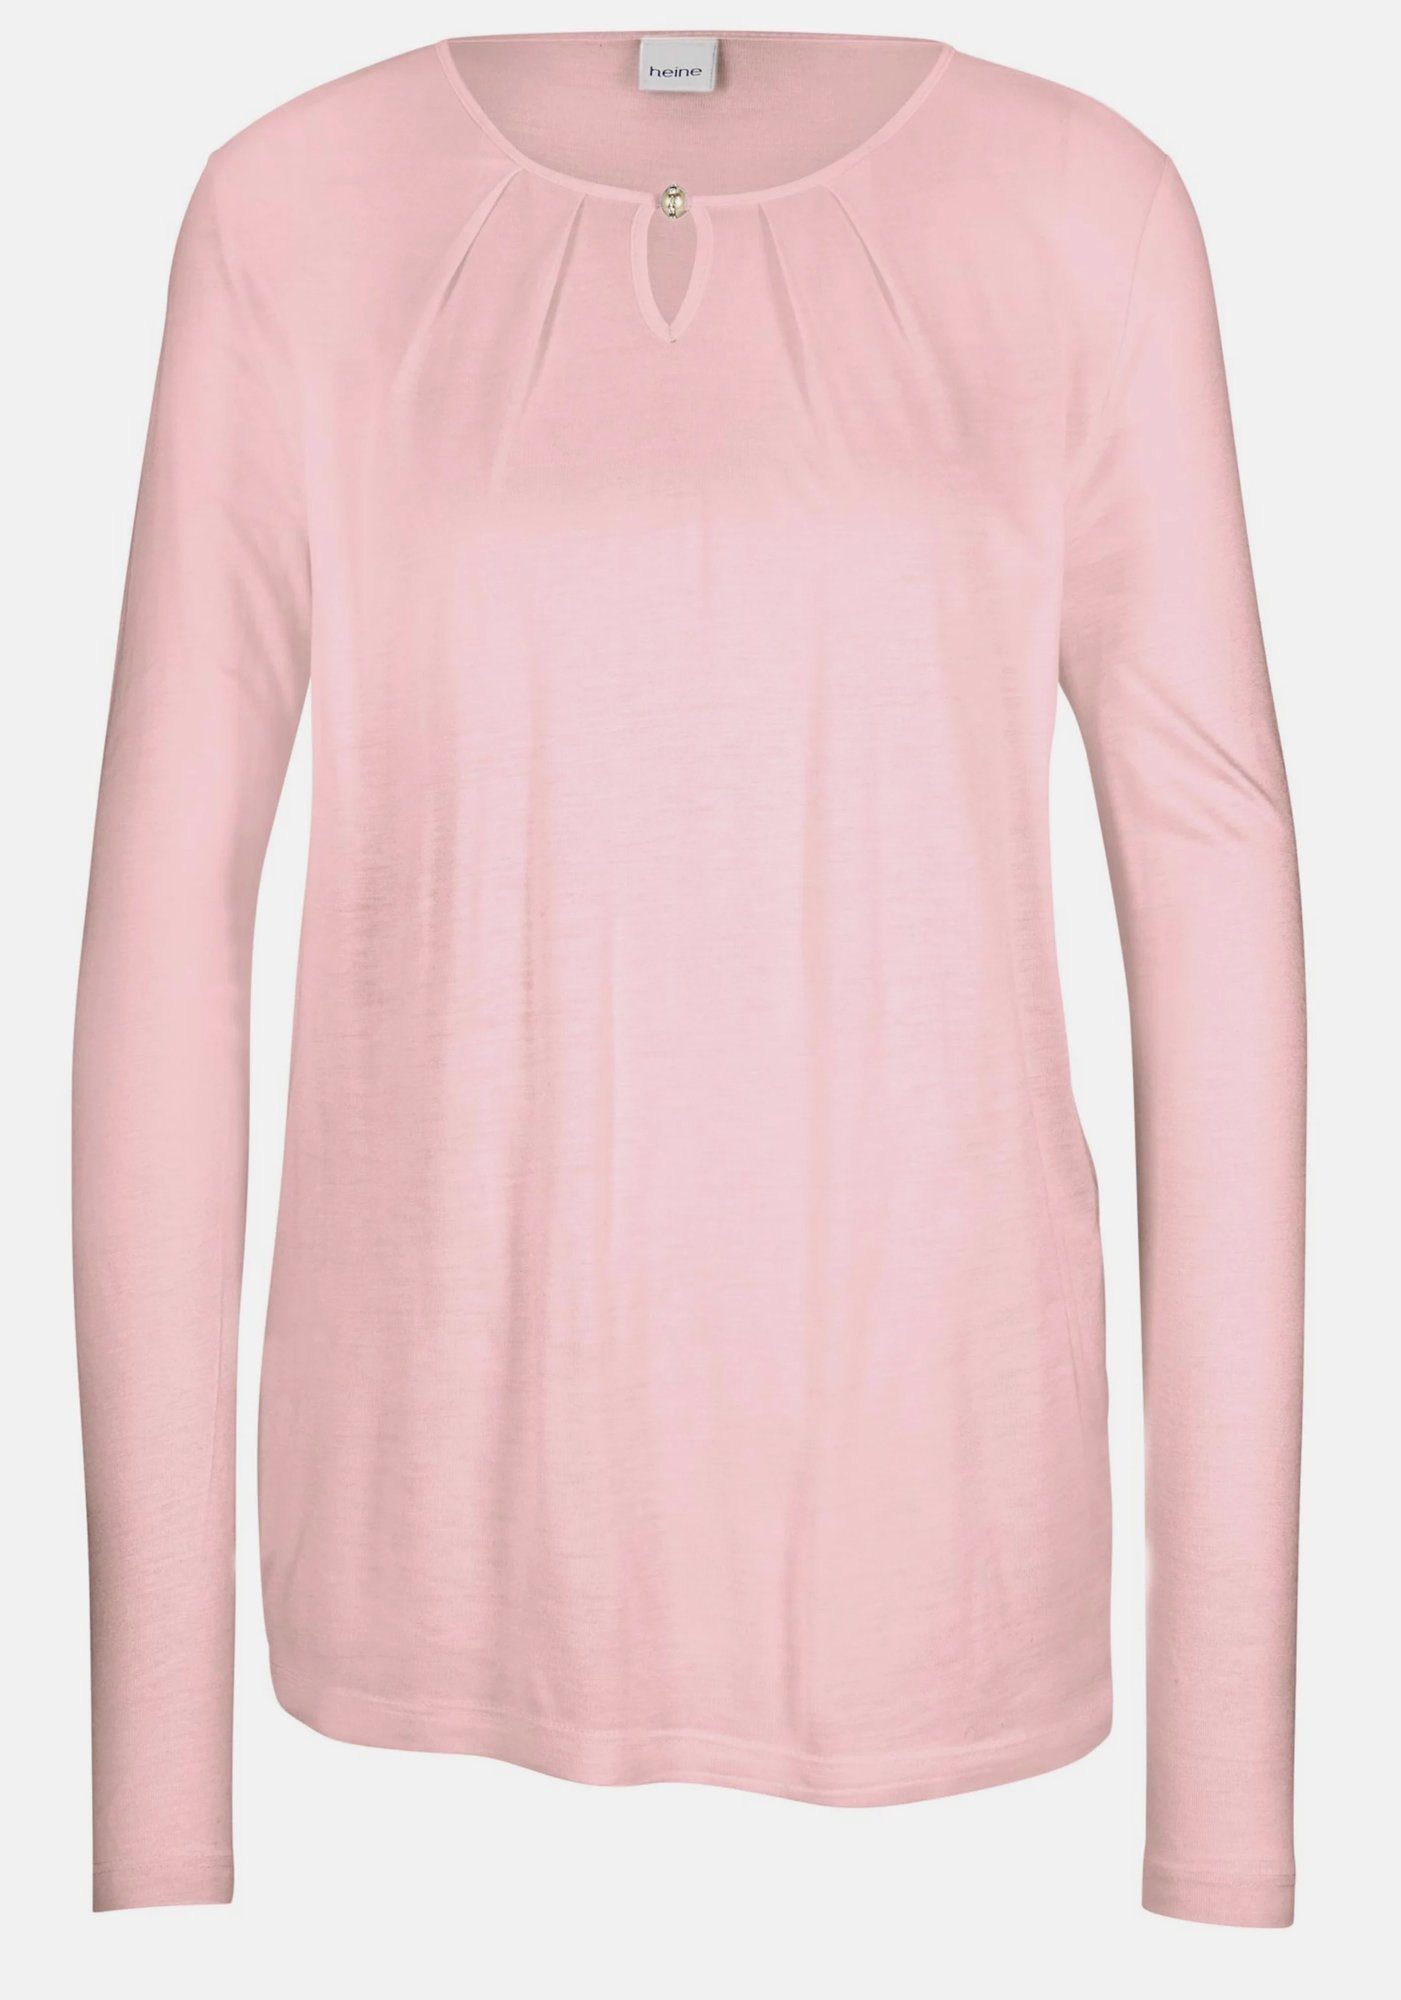 Ashley Brooke by heine Spitzenshirt Ashley Brooke Damen Shirt mit langen Ärmeln, rose